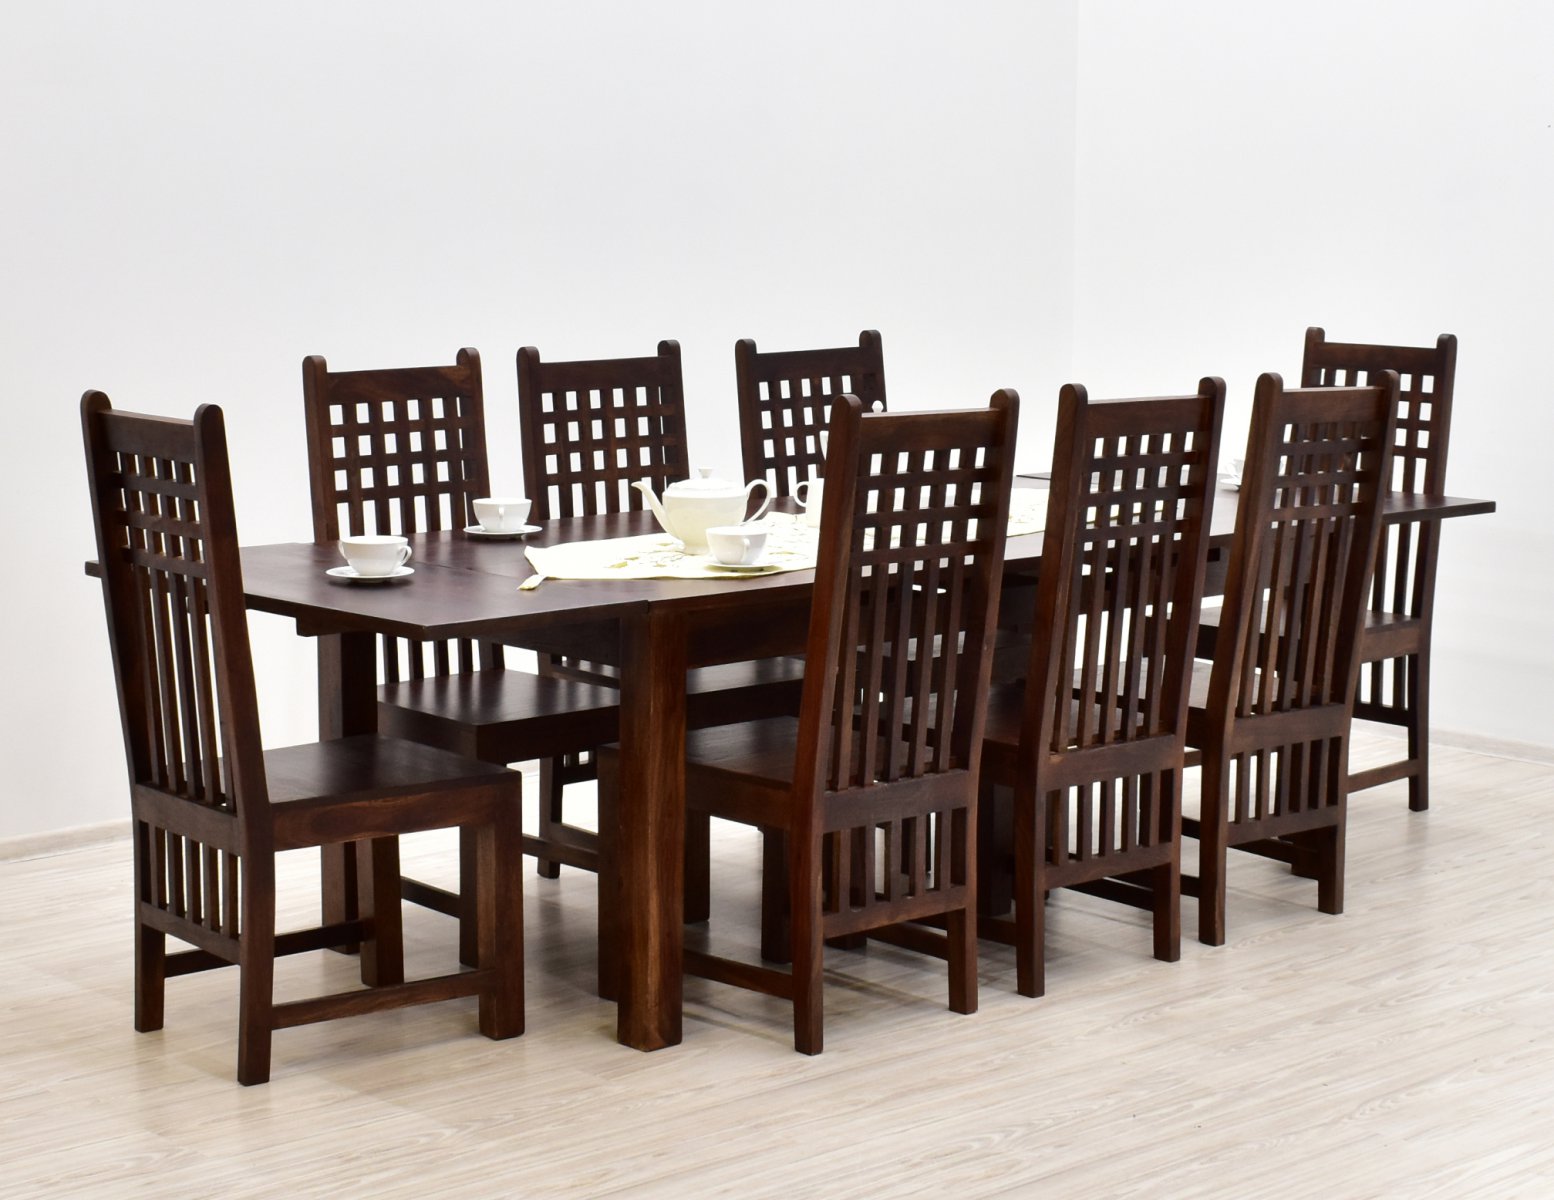 Komplet obiadowy kolonialny stol rozkladany 8 krzesel lite drewno palisander indyjski ciemnobrazowy (1)